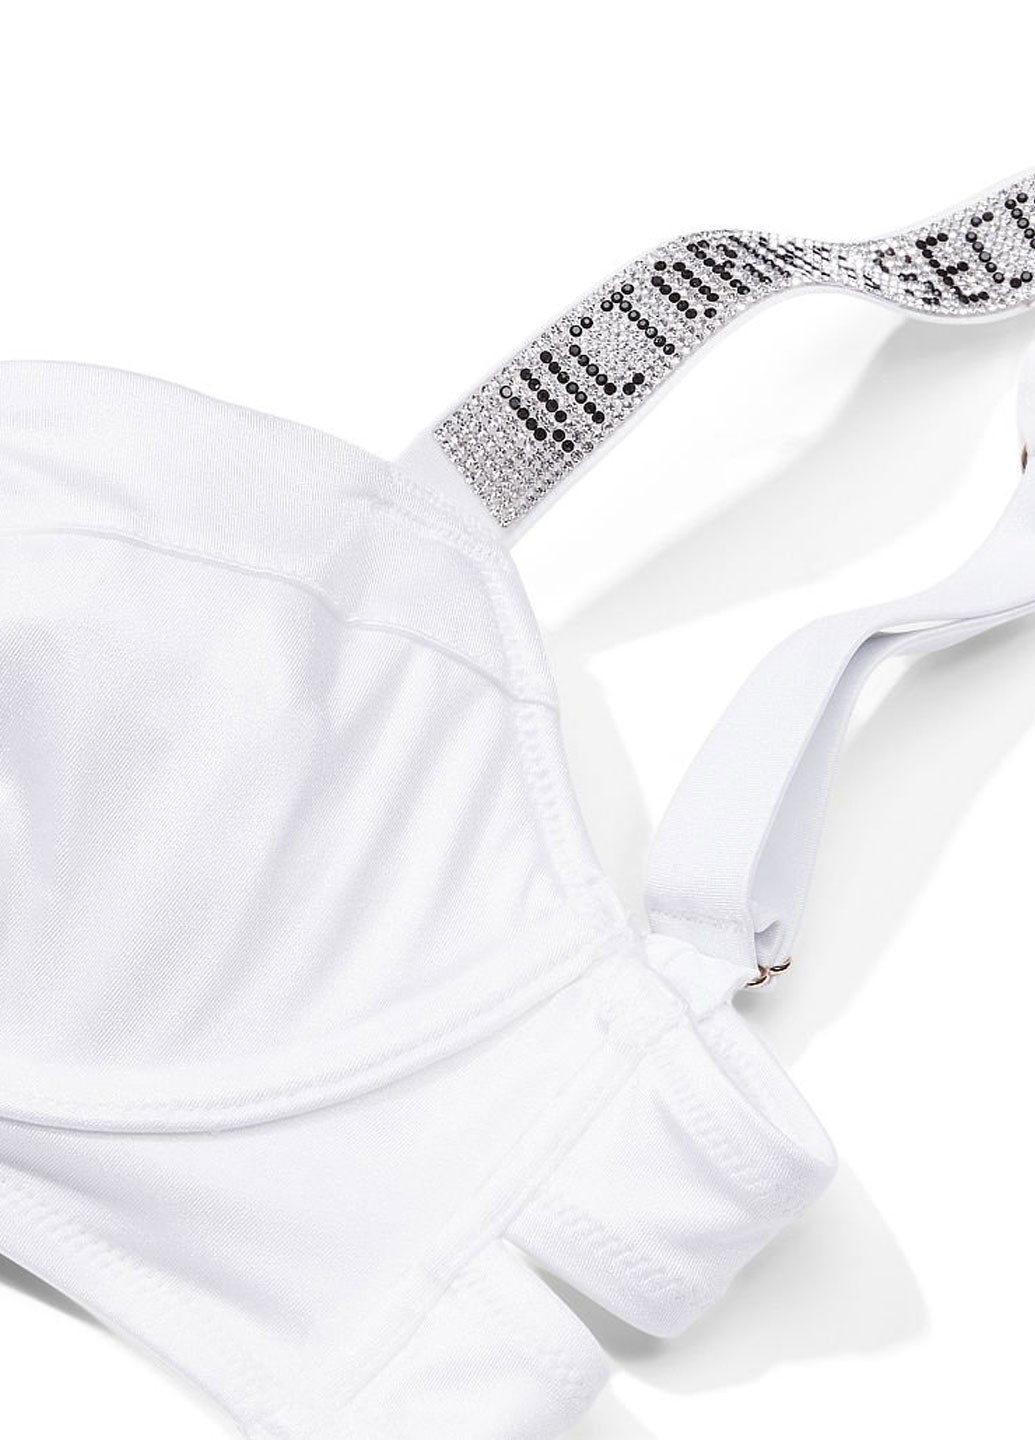 Белый летний купальник (лиф, трусики) раздельный, бандини Victoria's Secret